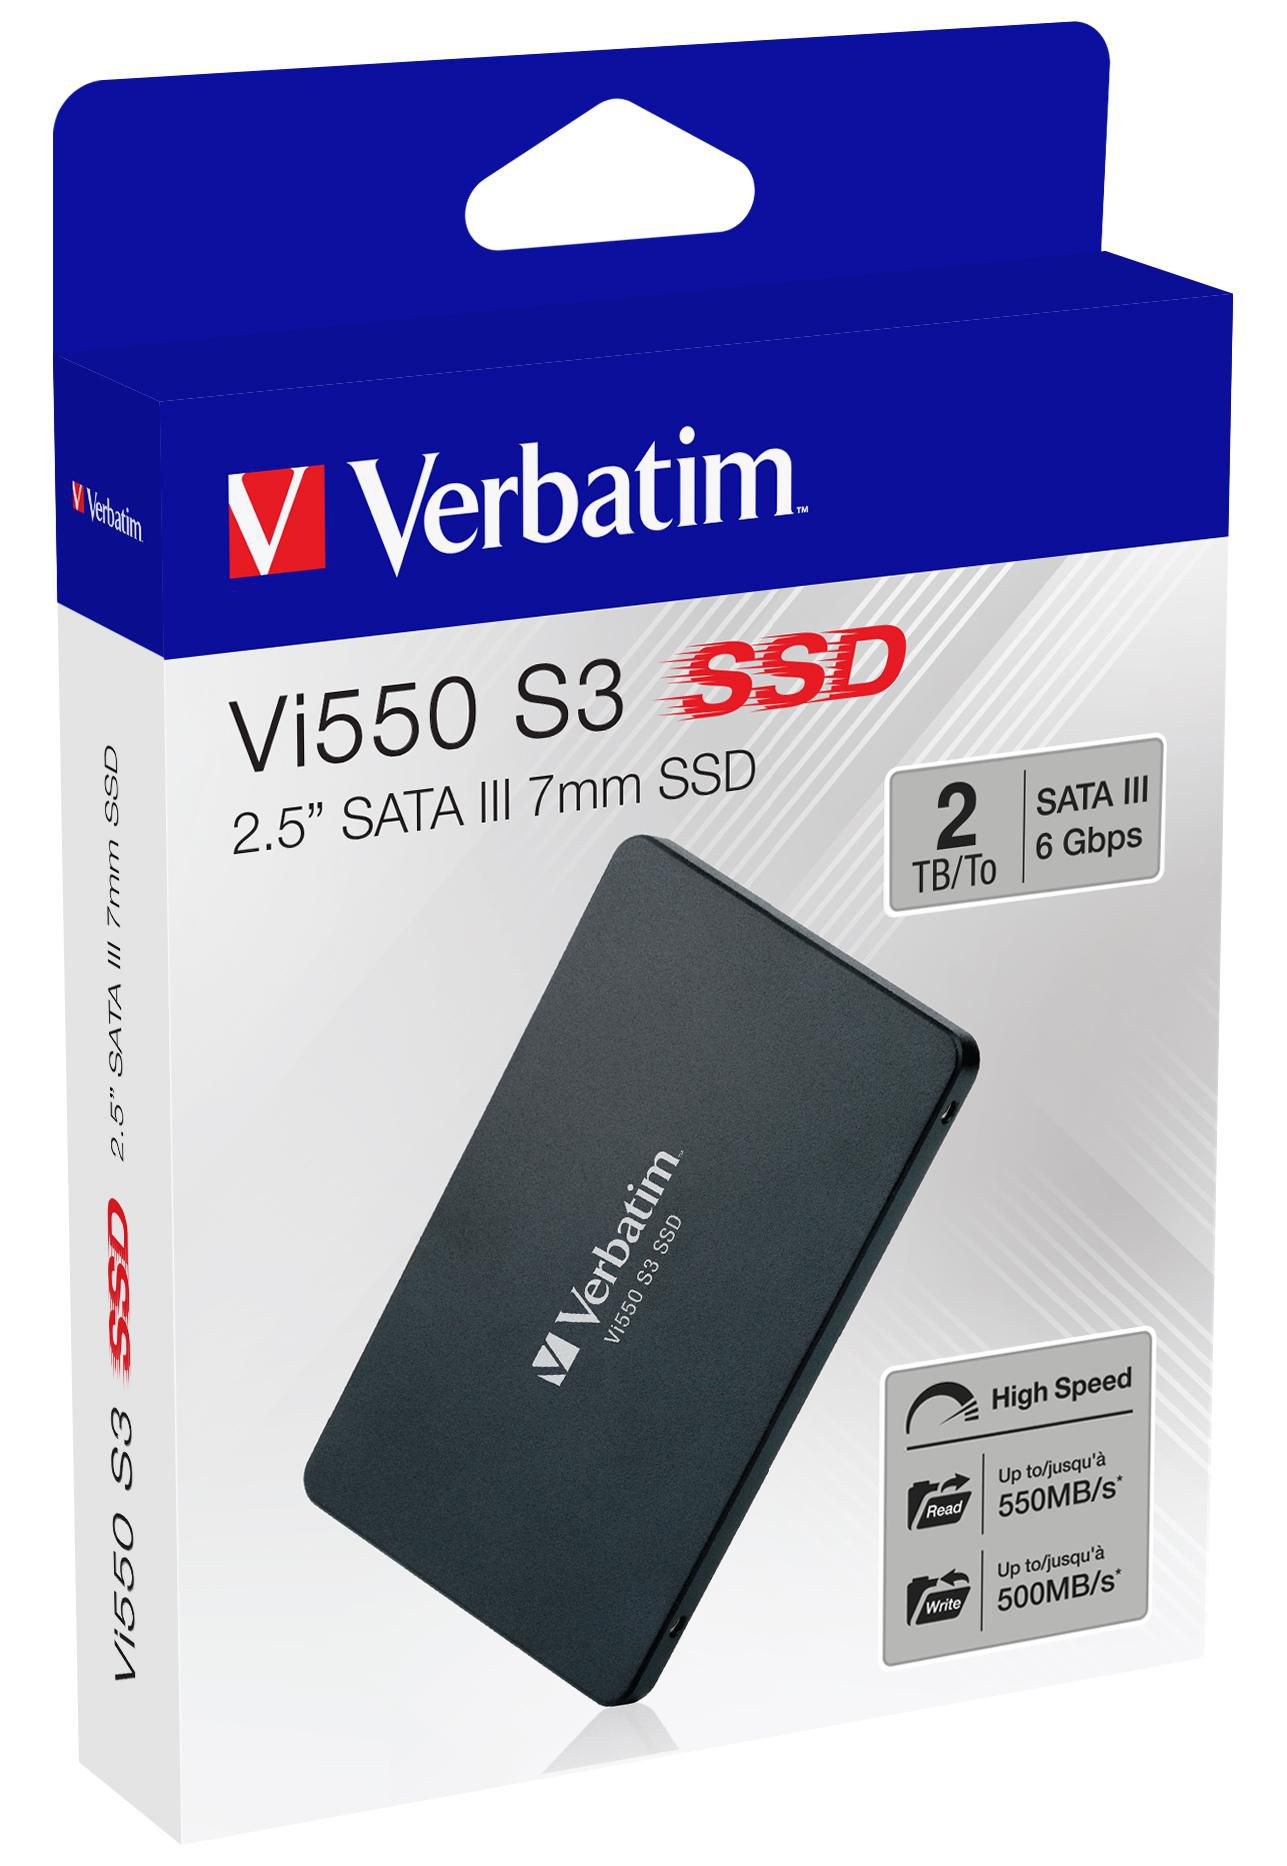 Verbatim 49354 W128312474 Vi550 S3 2.5 SSD 2TB 